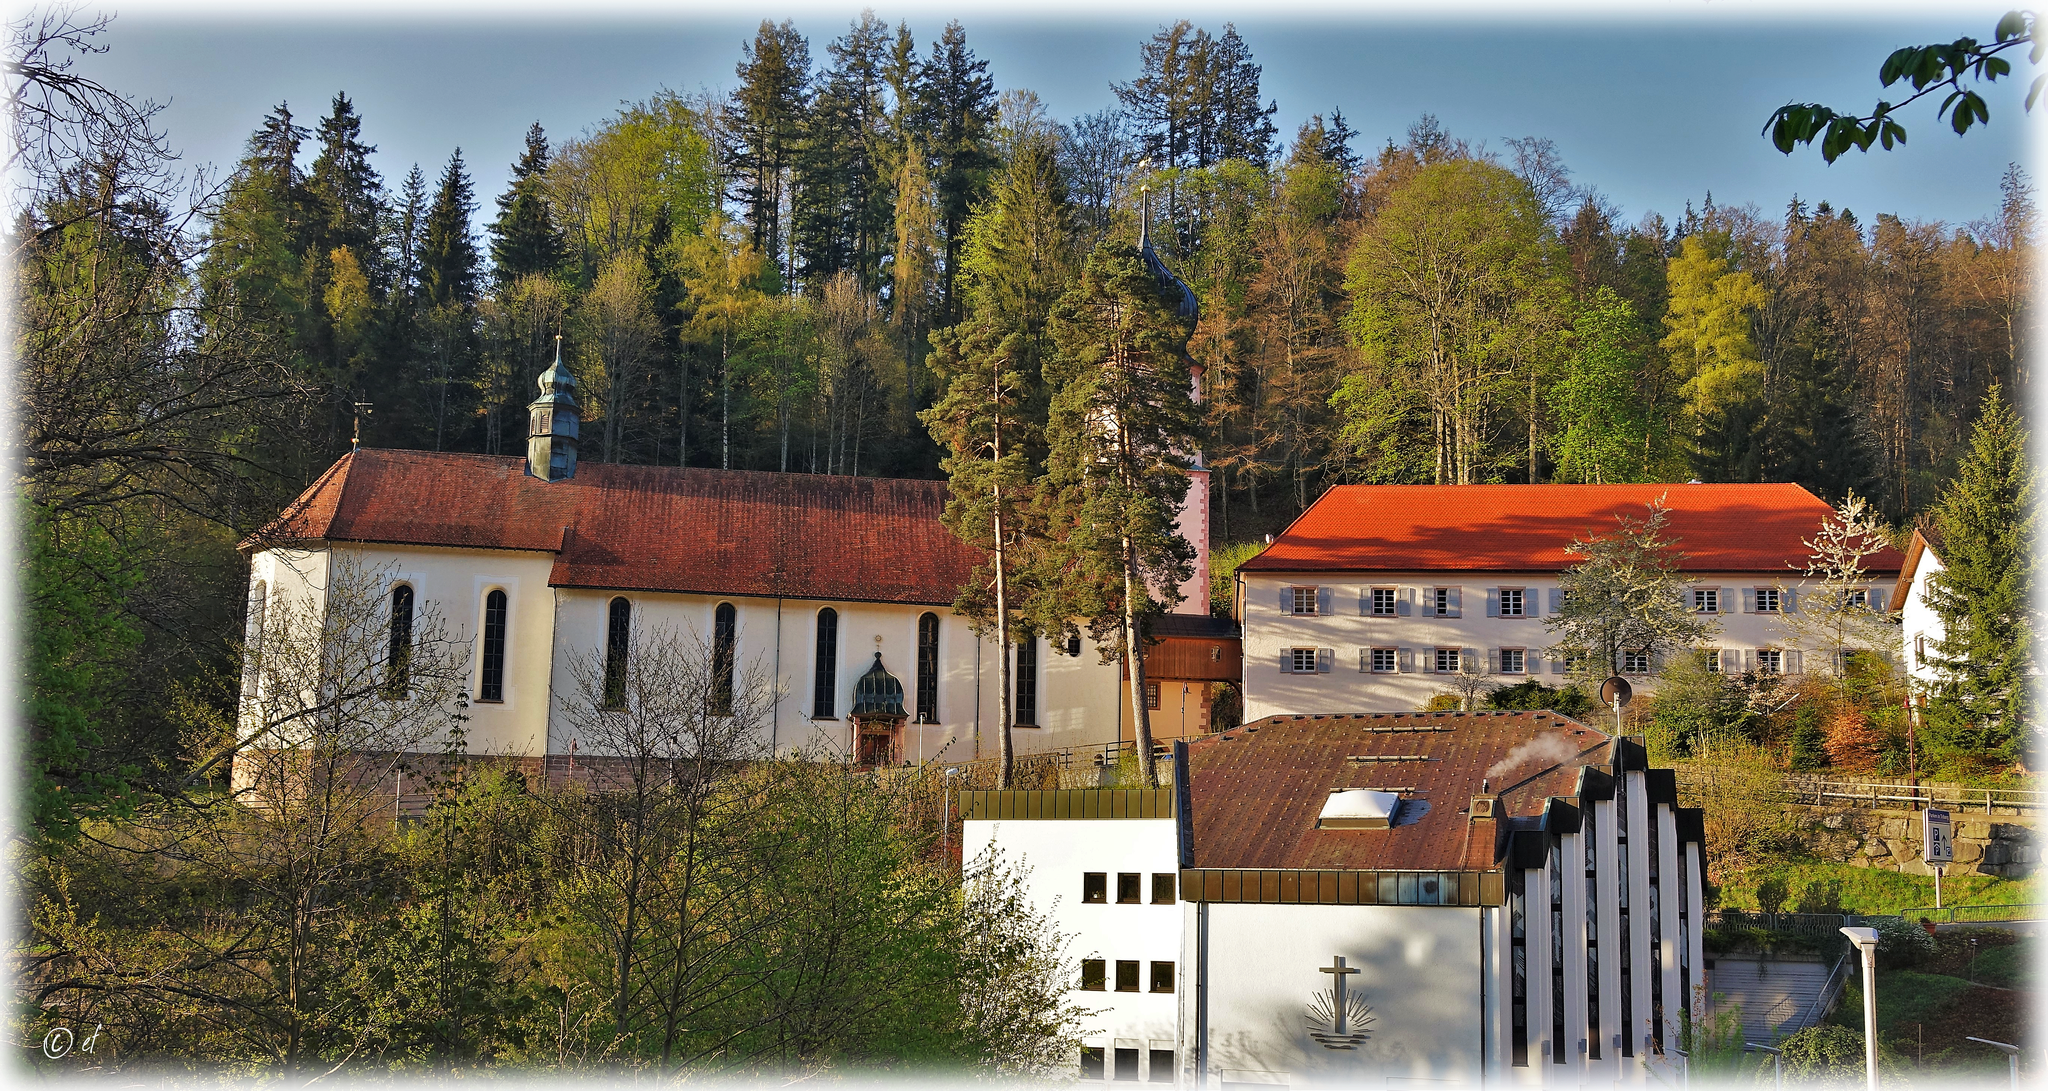 Neuapostolische Kirche & Wallfahrtskirche (mit den zwei großgewachsenen Kiefern) in Triberg